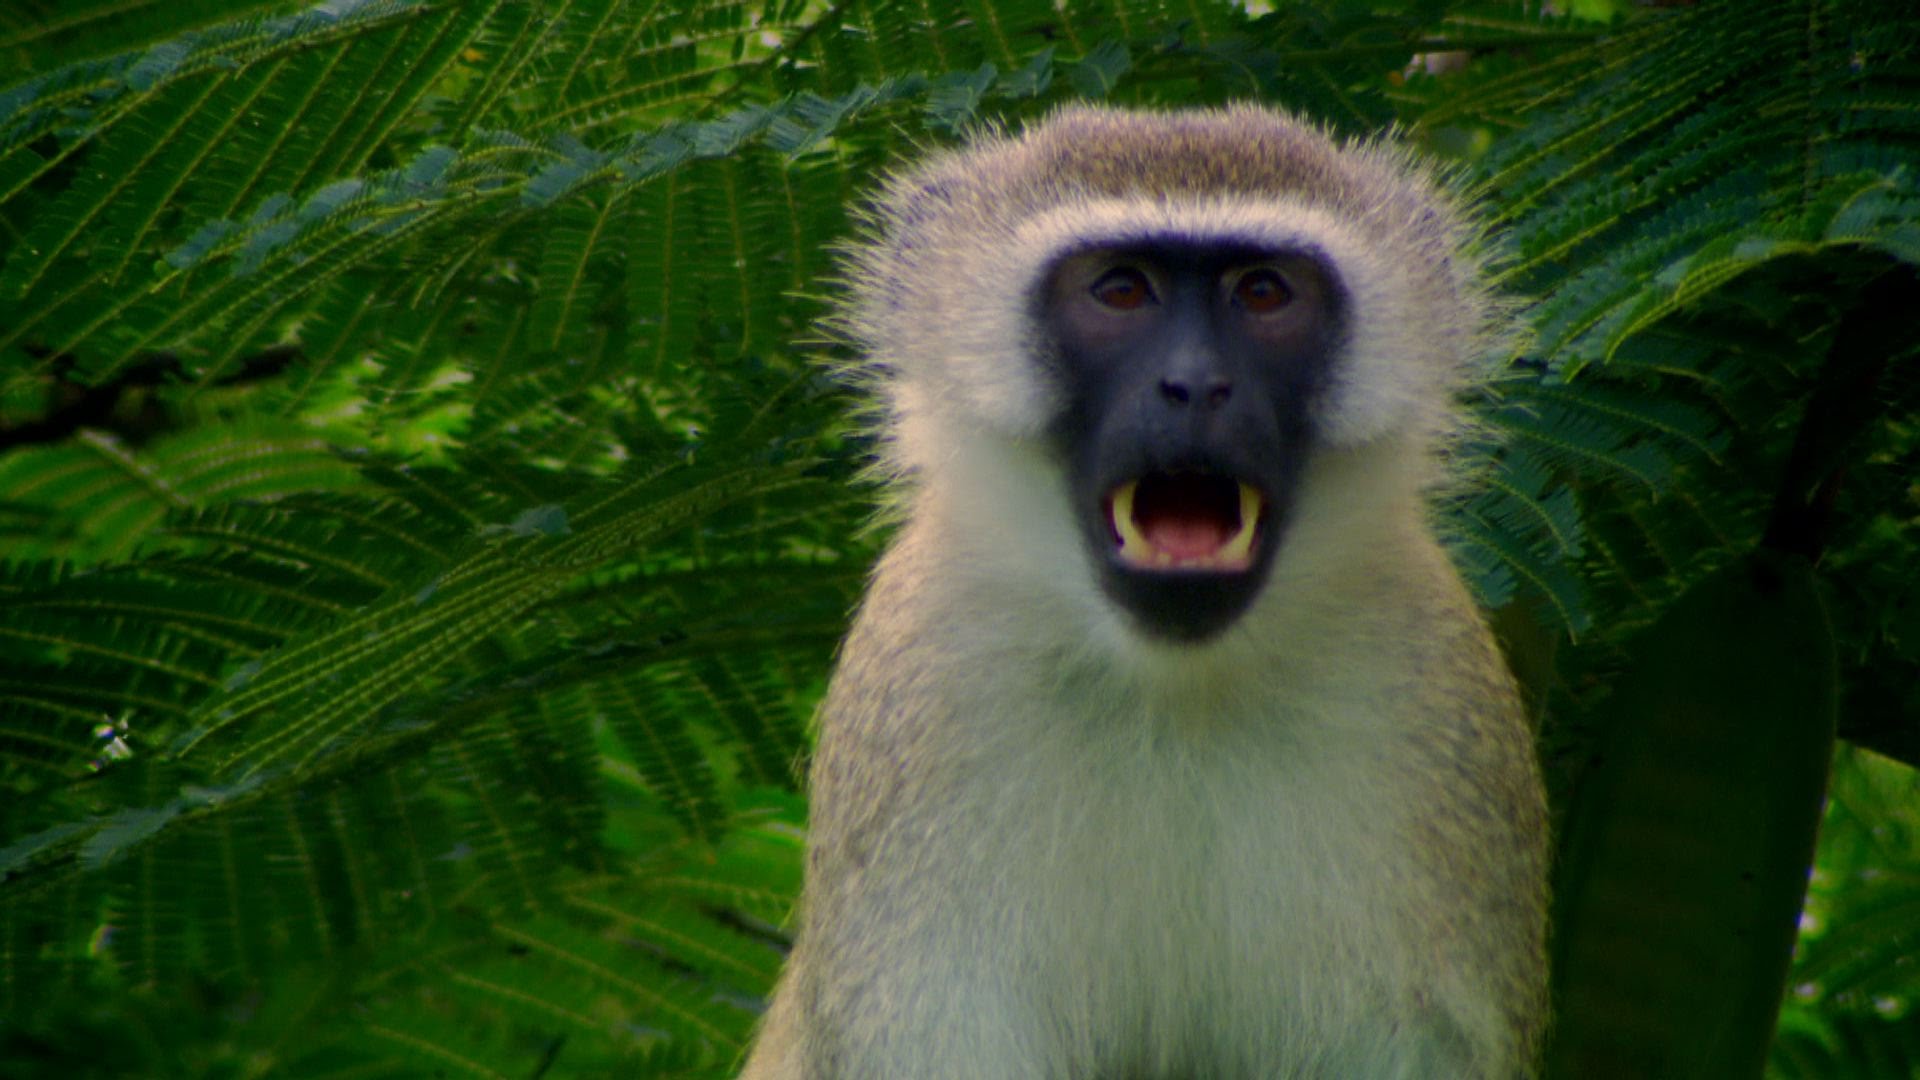 Vervet monkey's escape plans - Talk to the Animals: Episode 2 ...